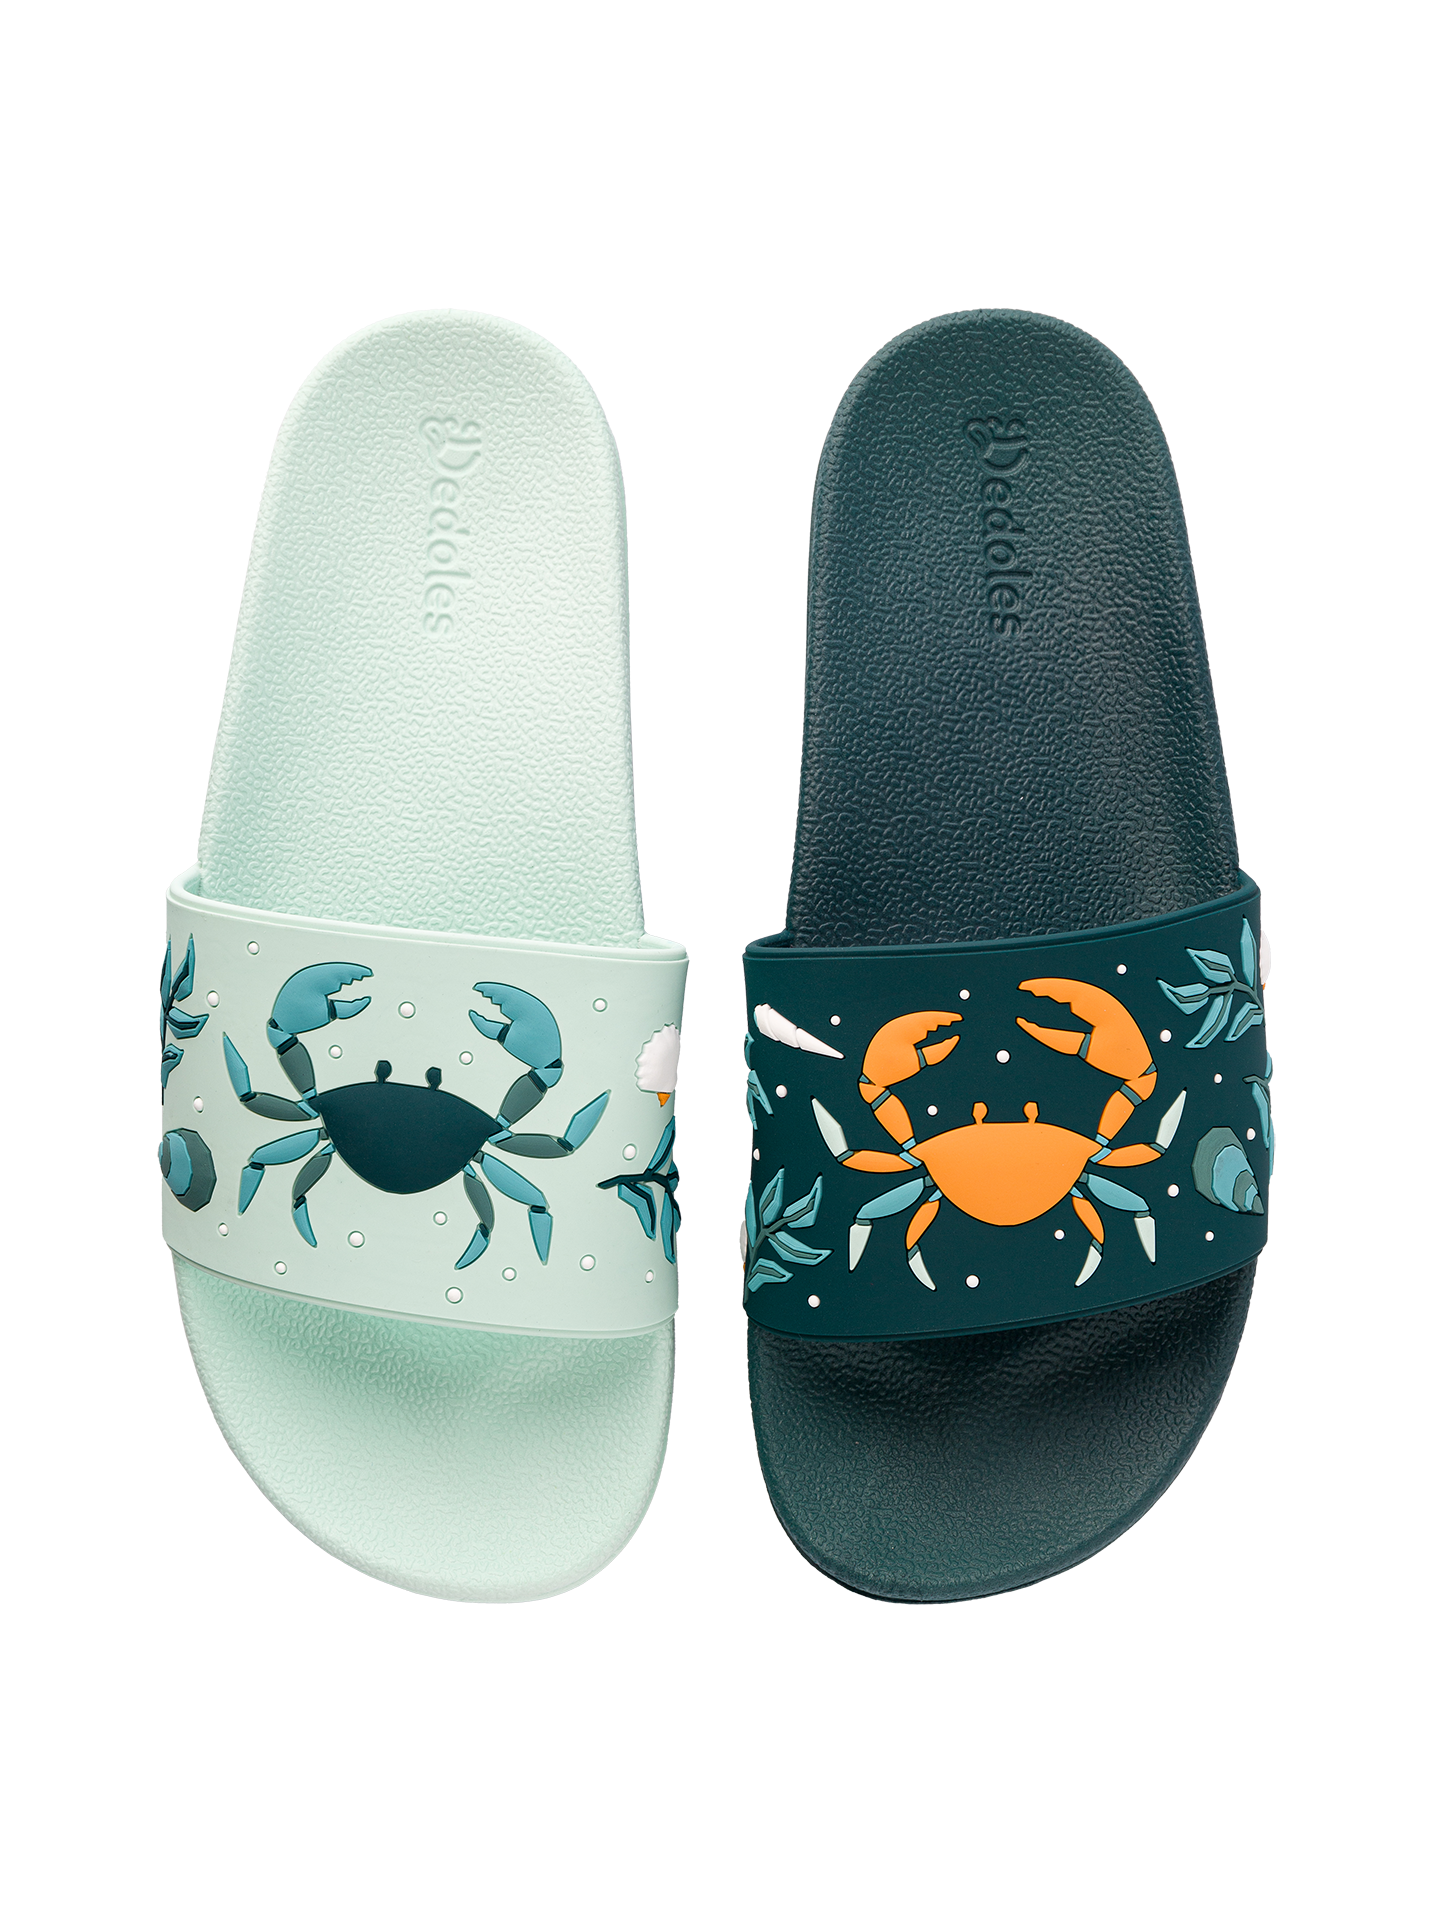 Slides Sea Crab